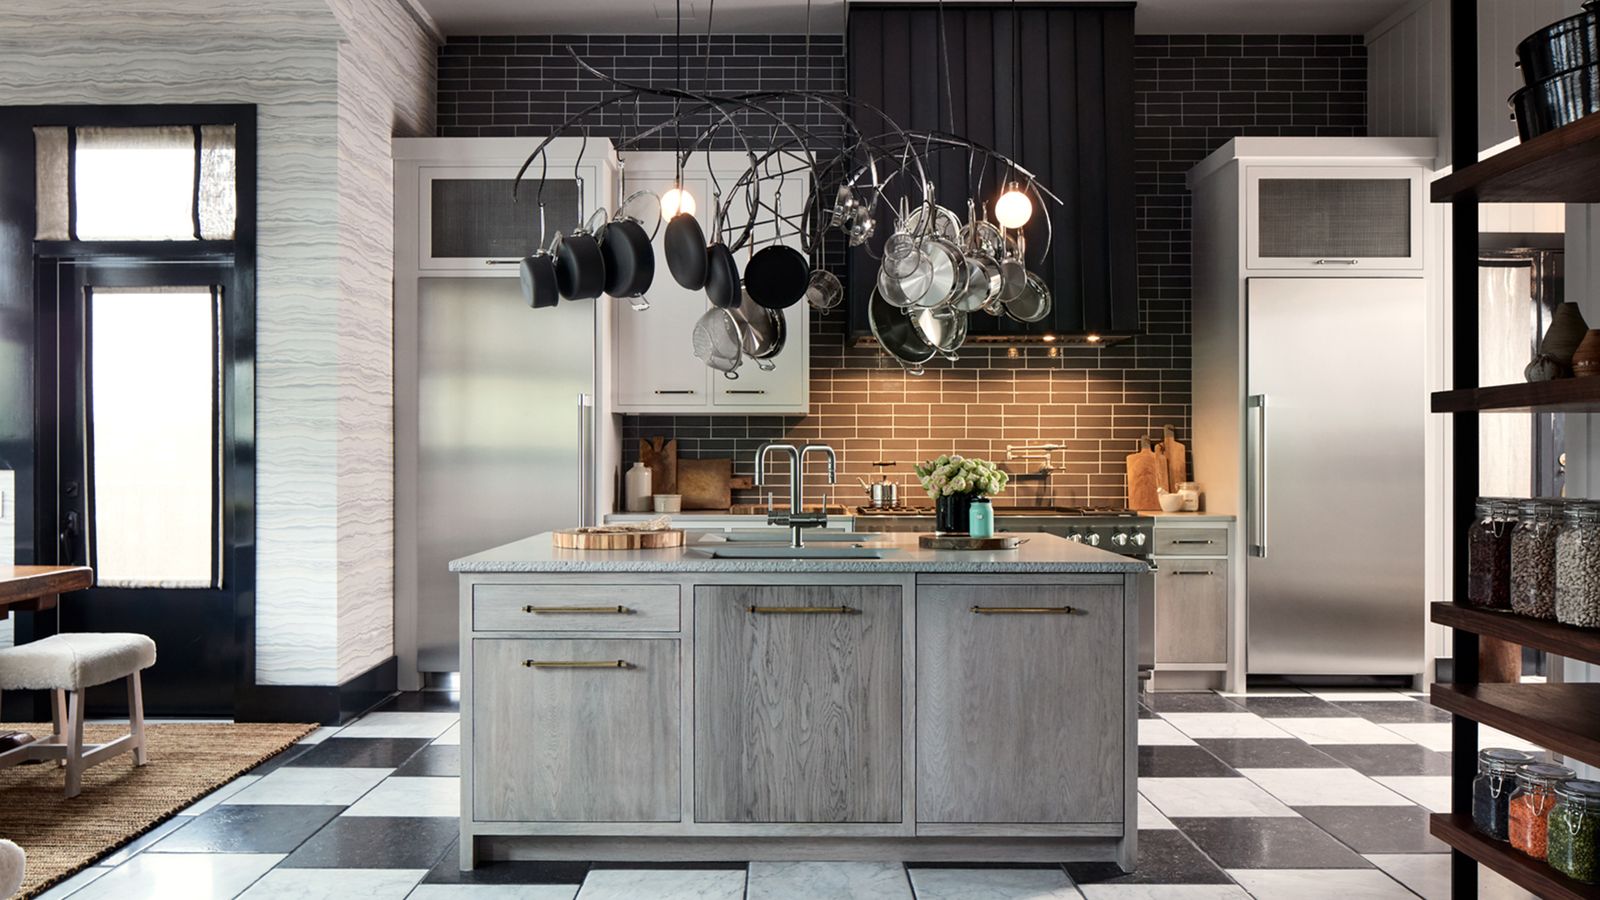  Design Kitchen 2017 Stainless steel refrigeration columns